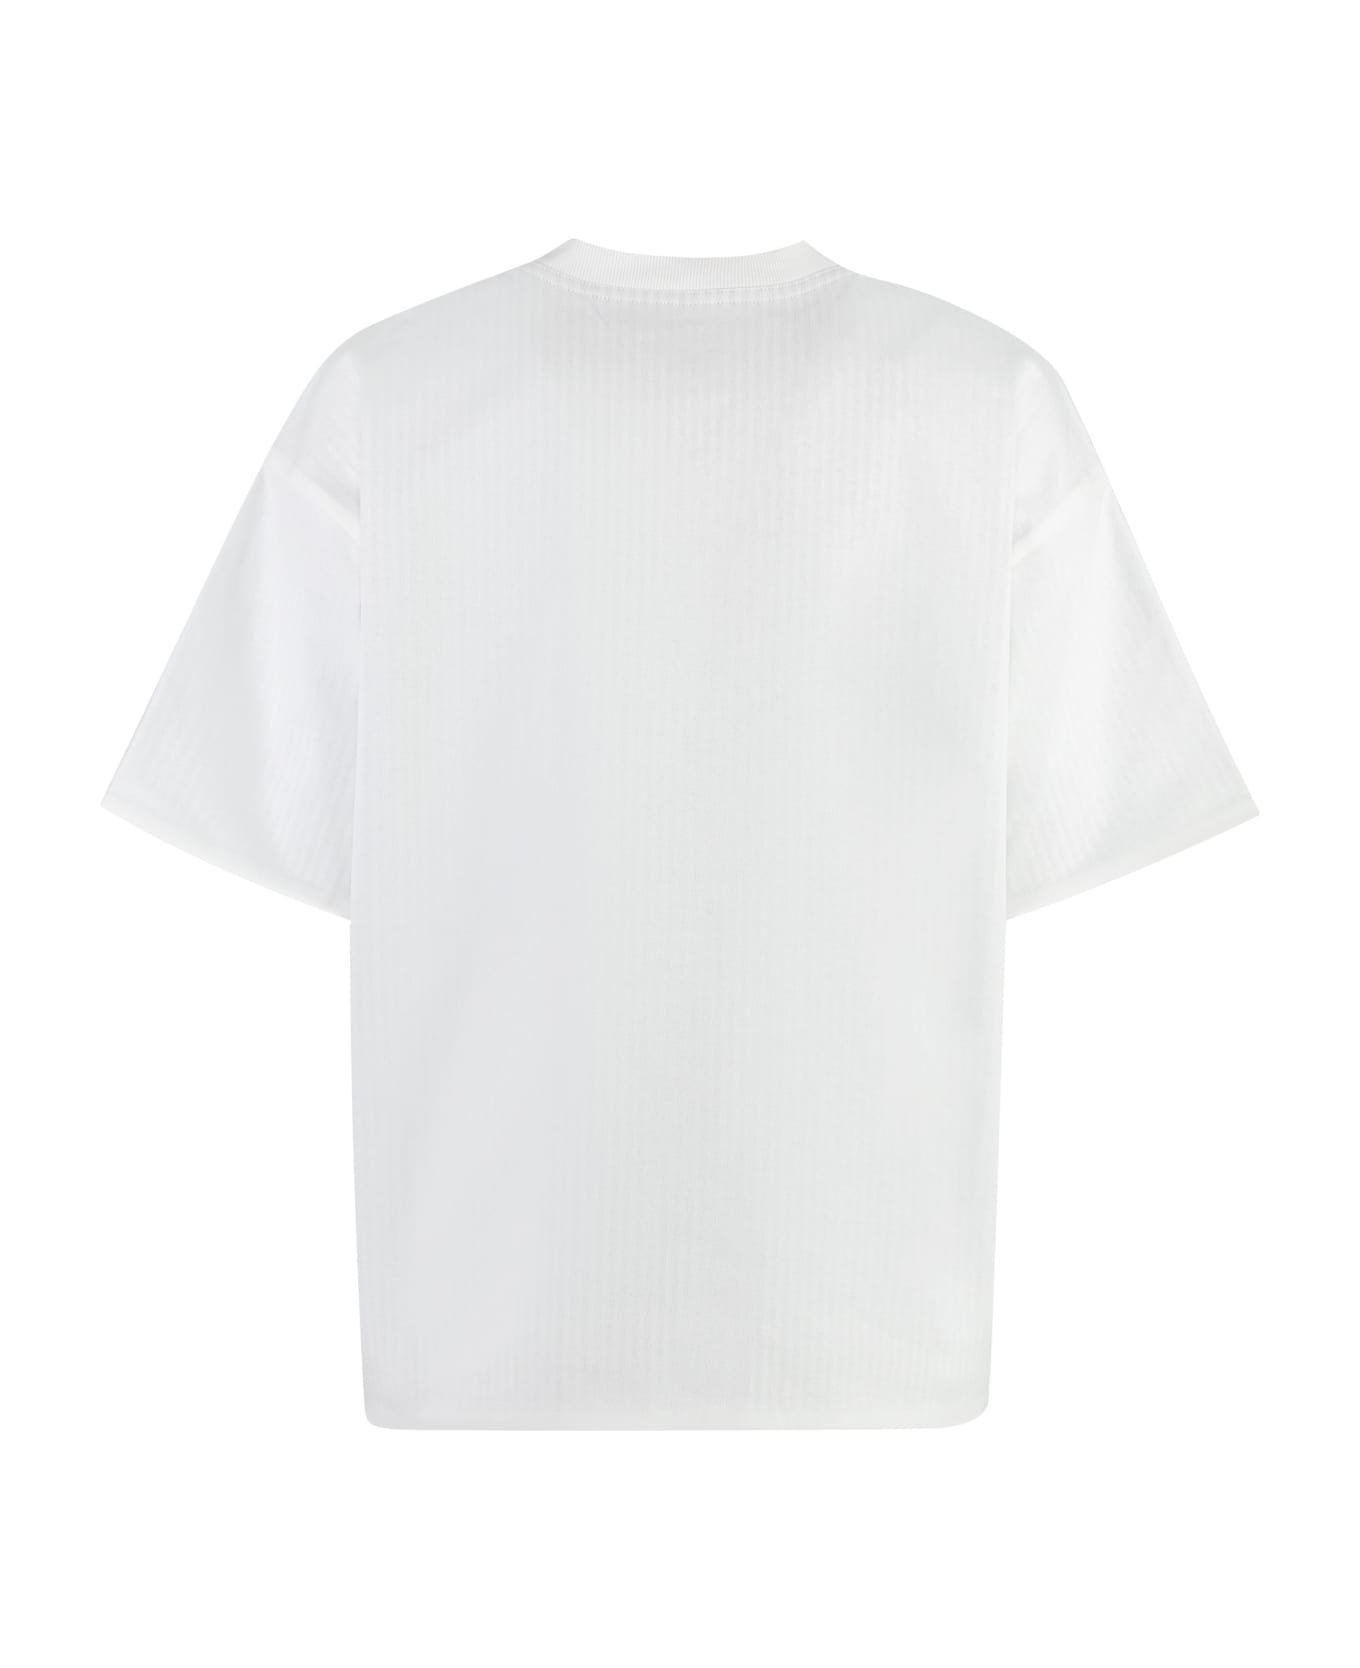 Bottega Veneta Cotton Crew-neck T-shirt - White